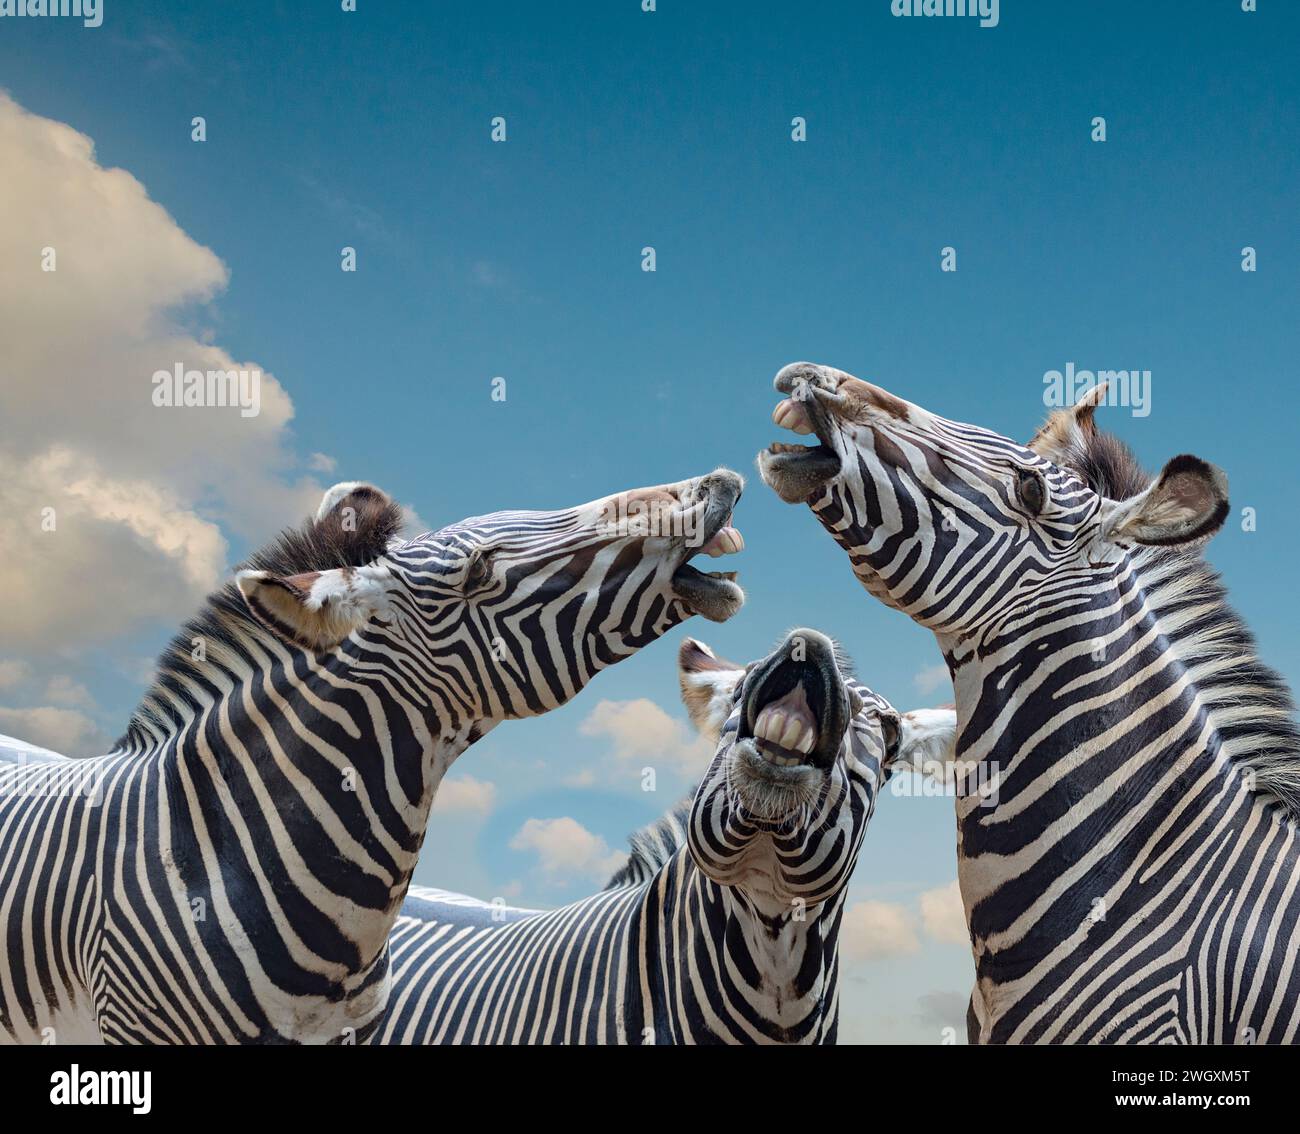 Trois zèbres lèvent la tête et se dépouillent les dents alors qu'ils semblent chanter ensemble dans une image d'animal drôle. Banque D'Images